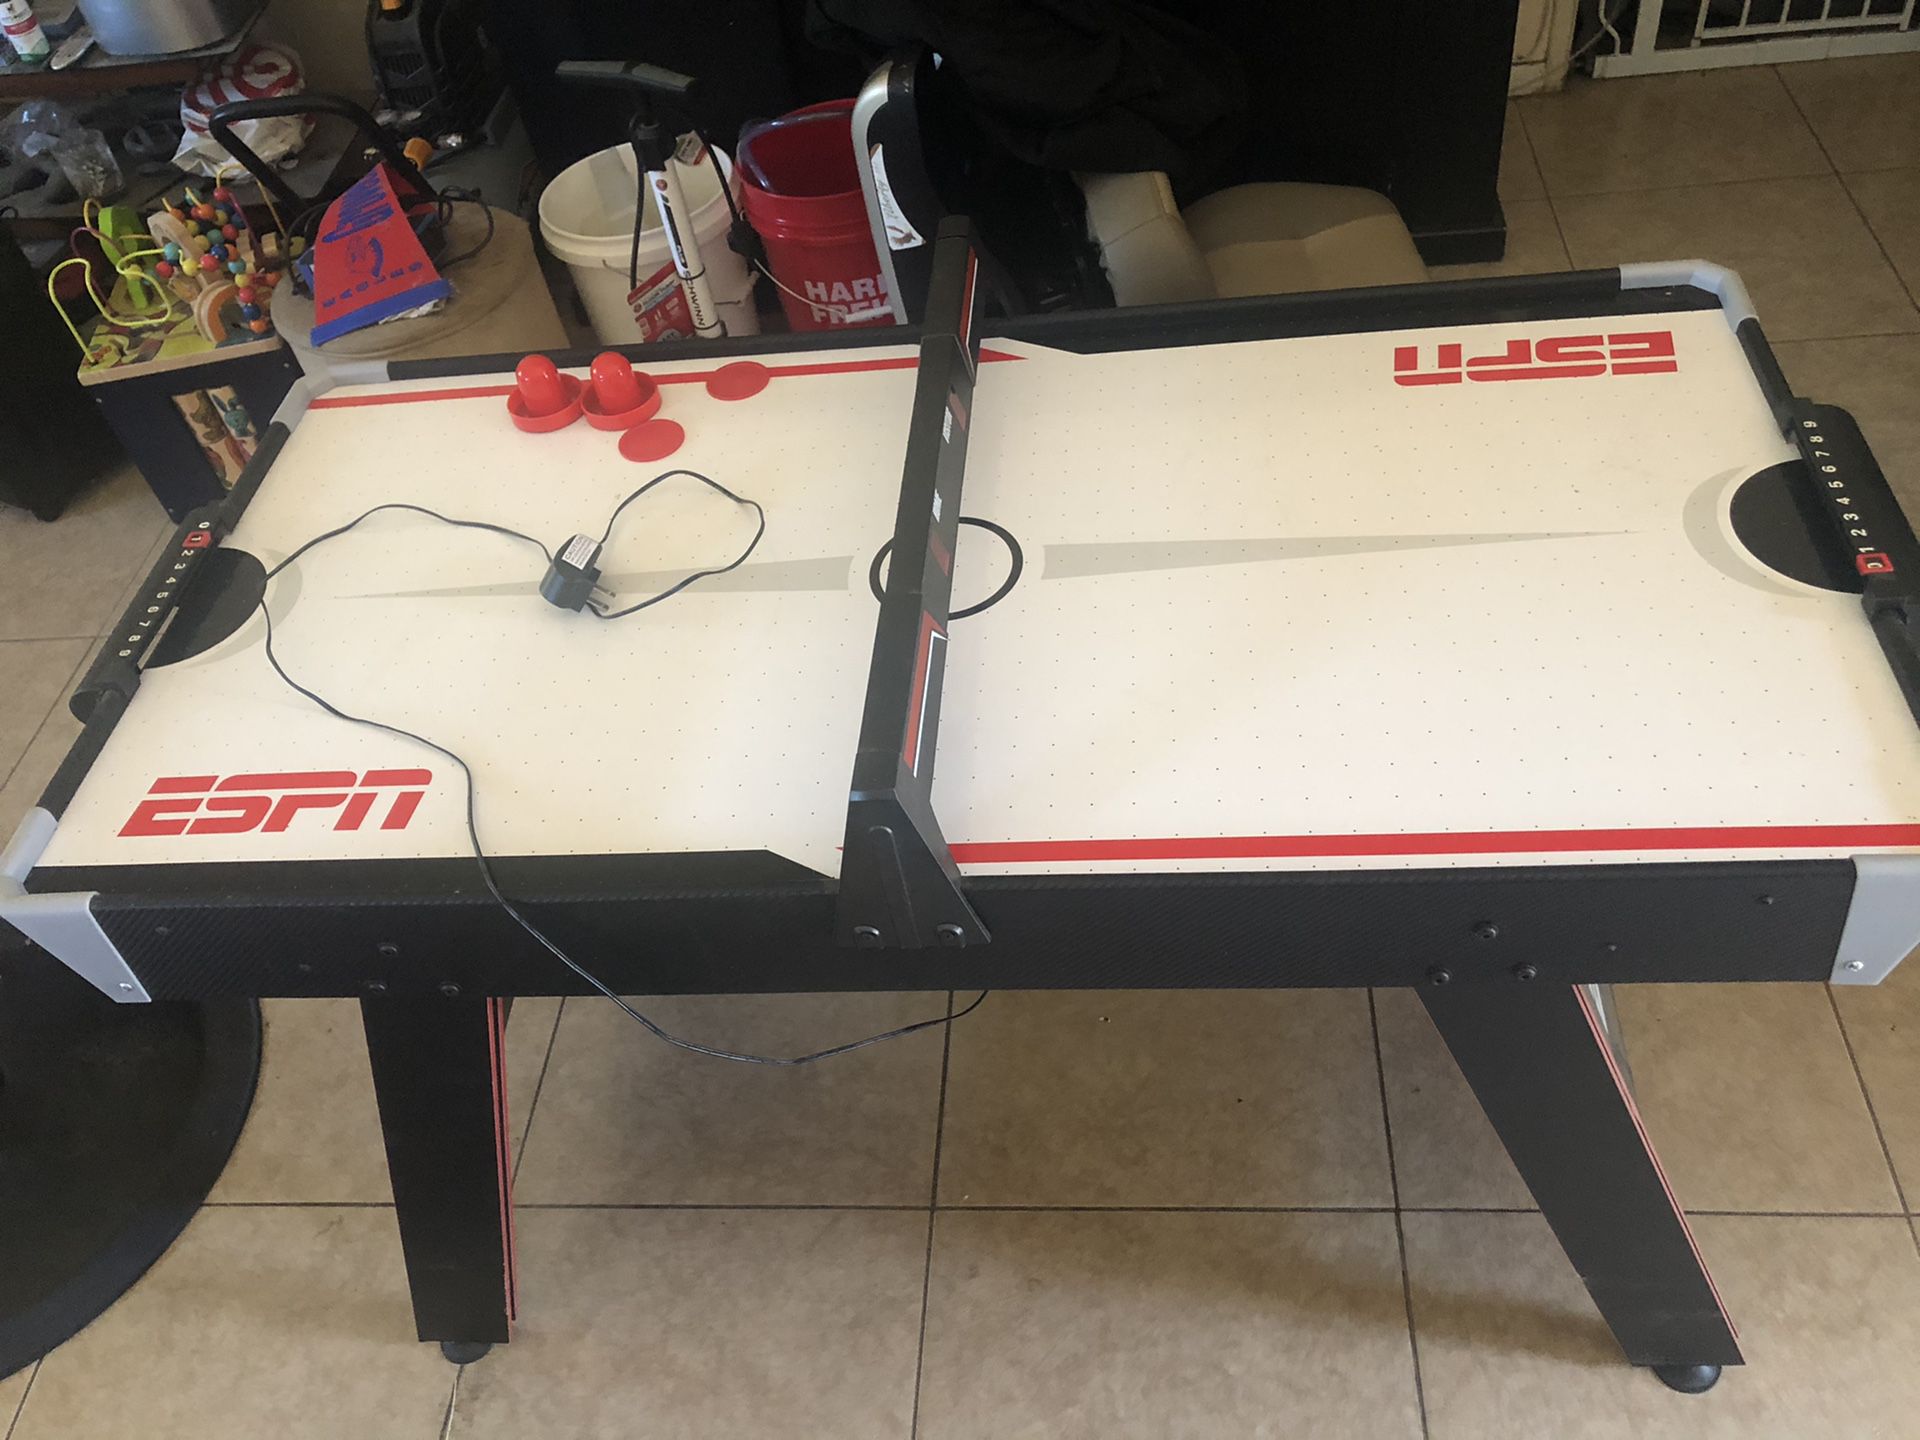 48” air powered hockey table